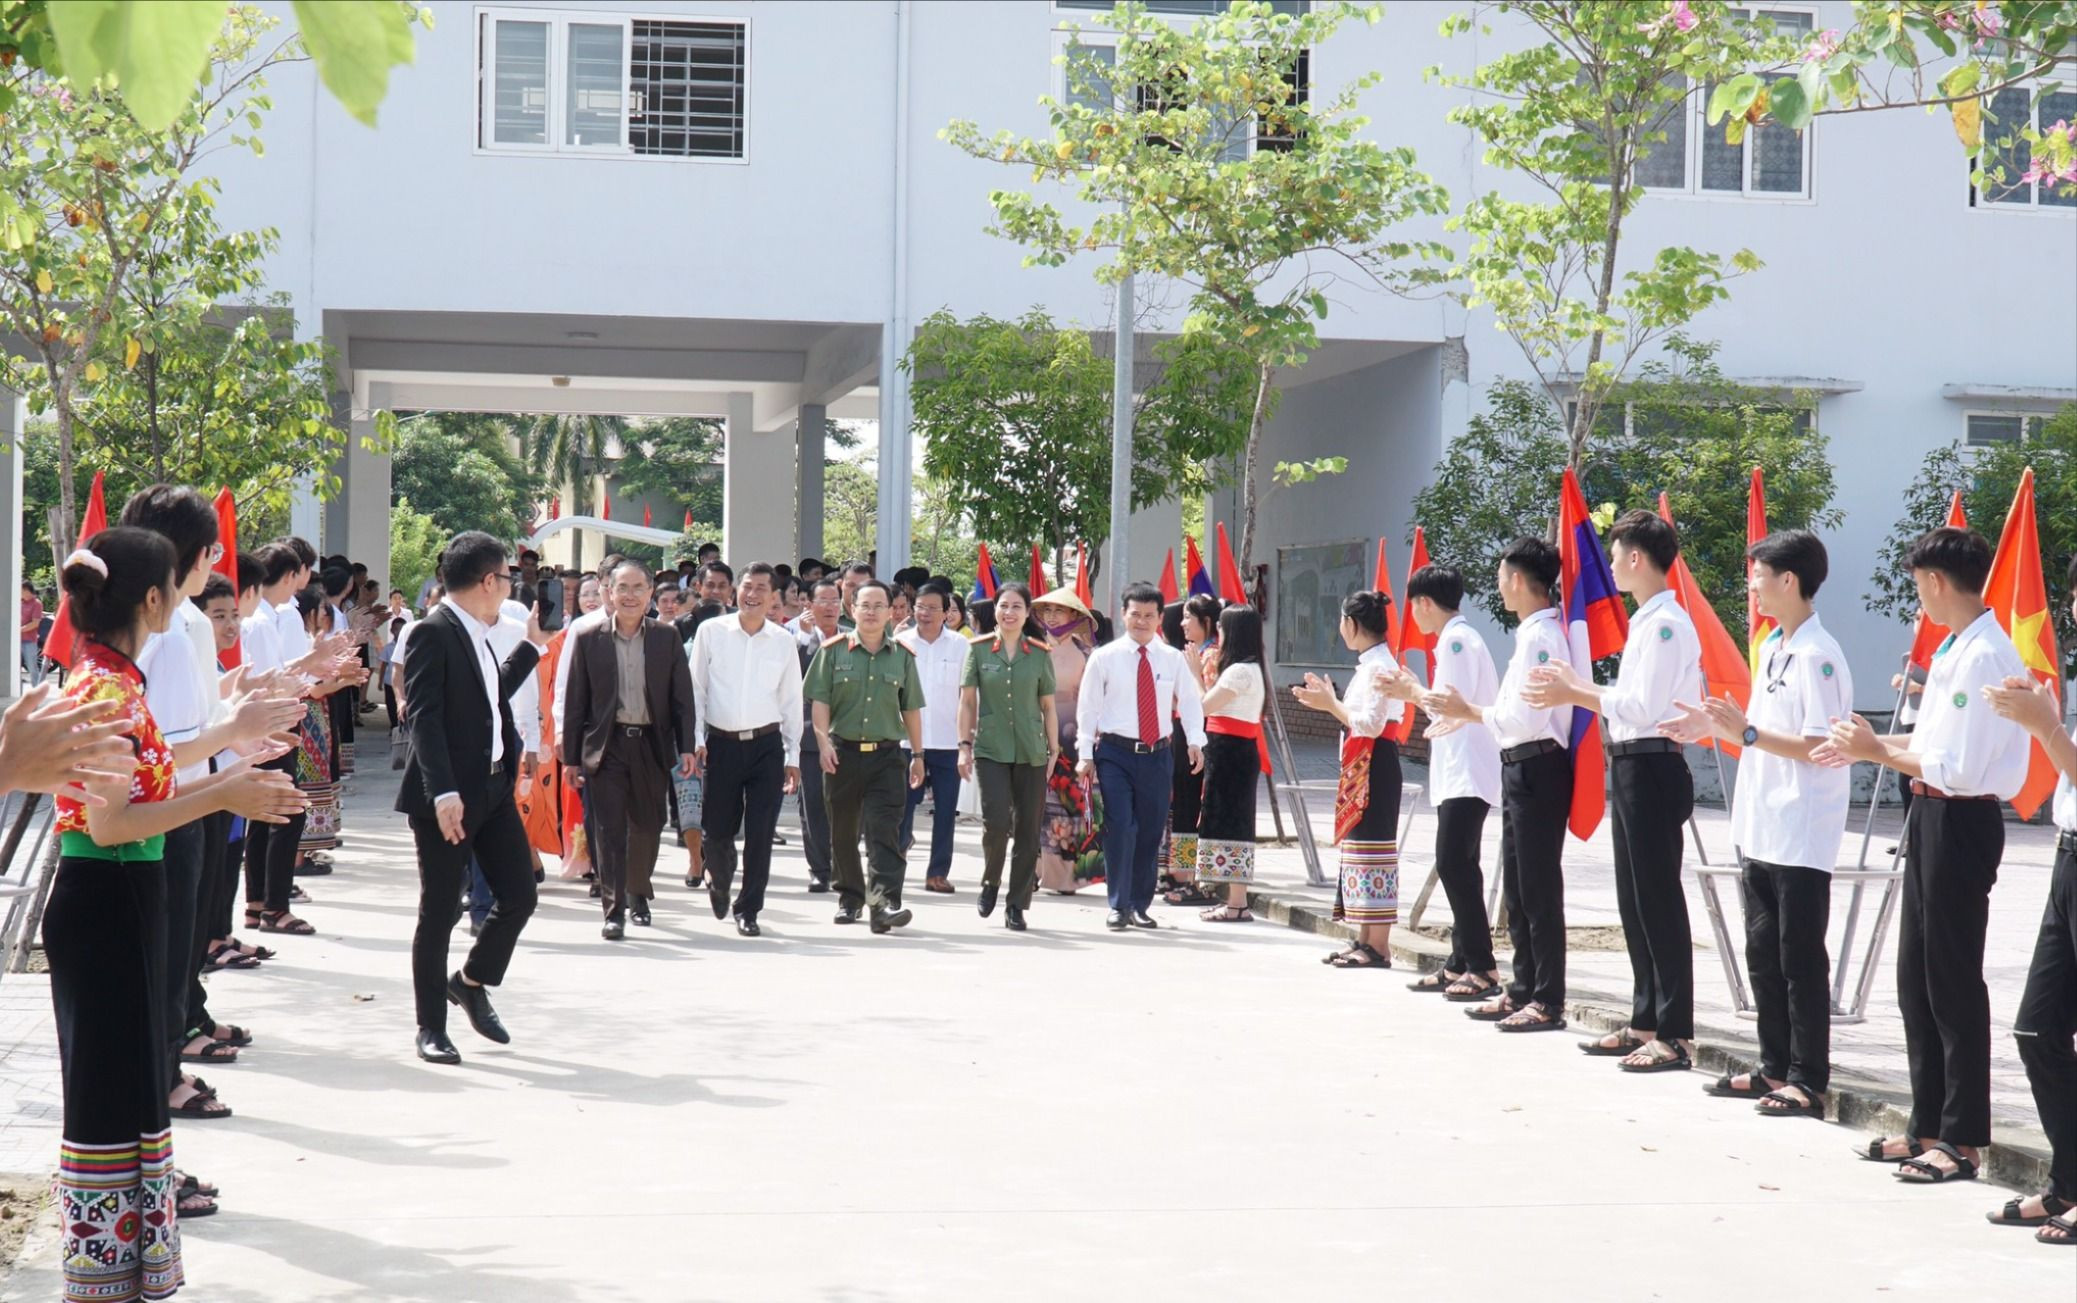 bna_Học sinh Trường PT DTNT THPT số 2 chào đón các đại biểu và các học sinh đến từ 2 tỉnh Nghệ An và Cộng hòa dân chủ nhân dân Lào.jpg